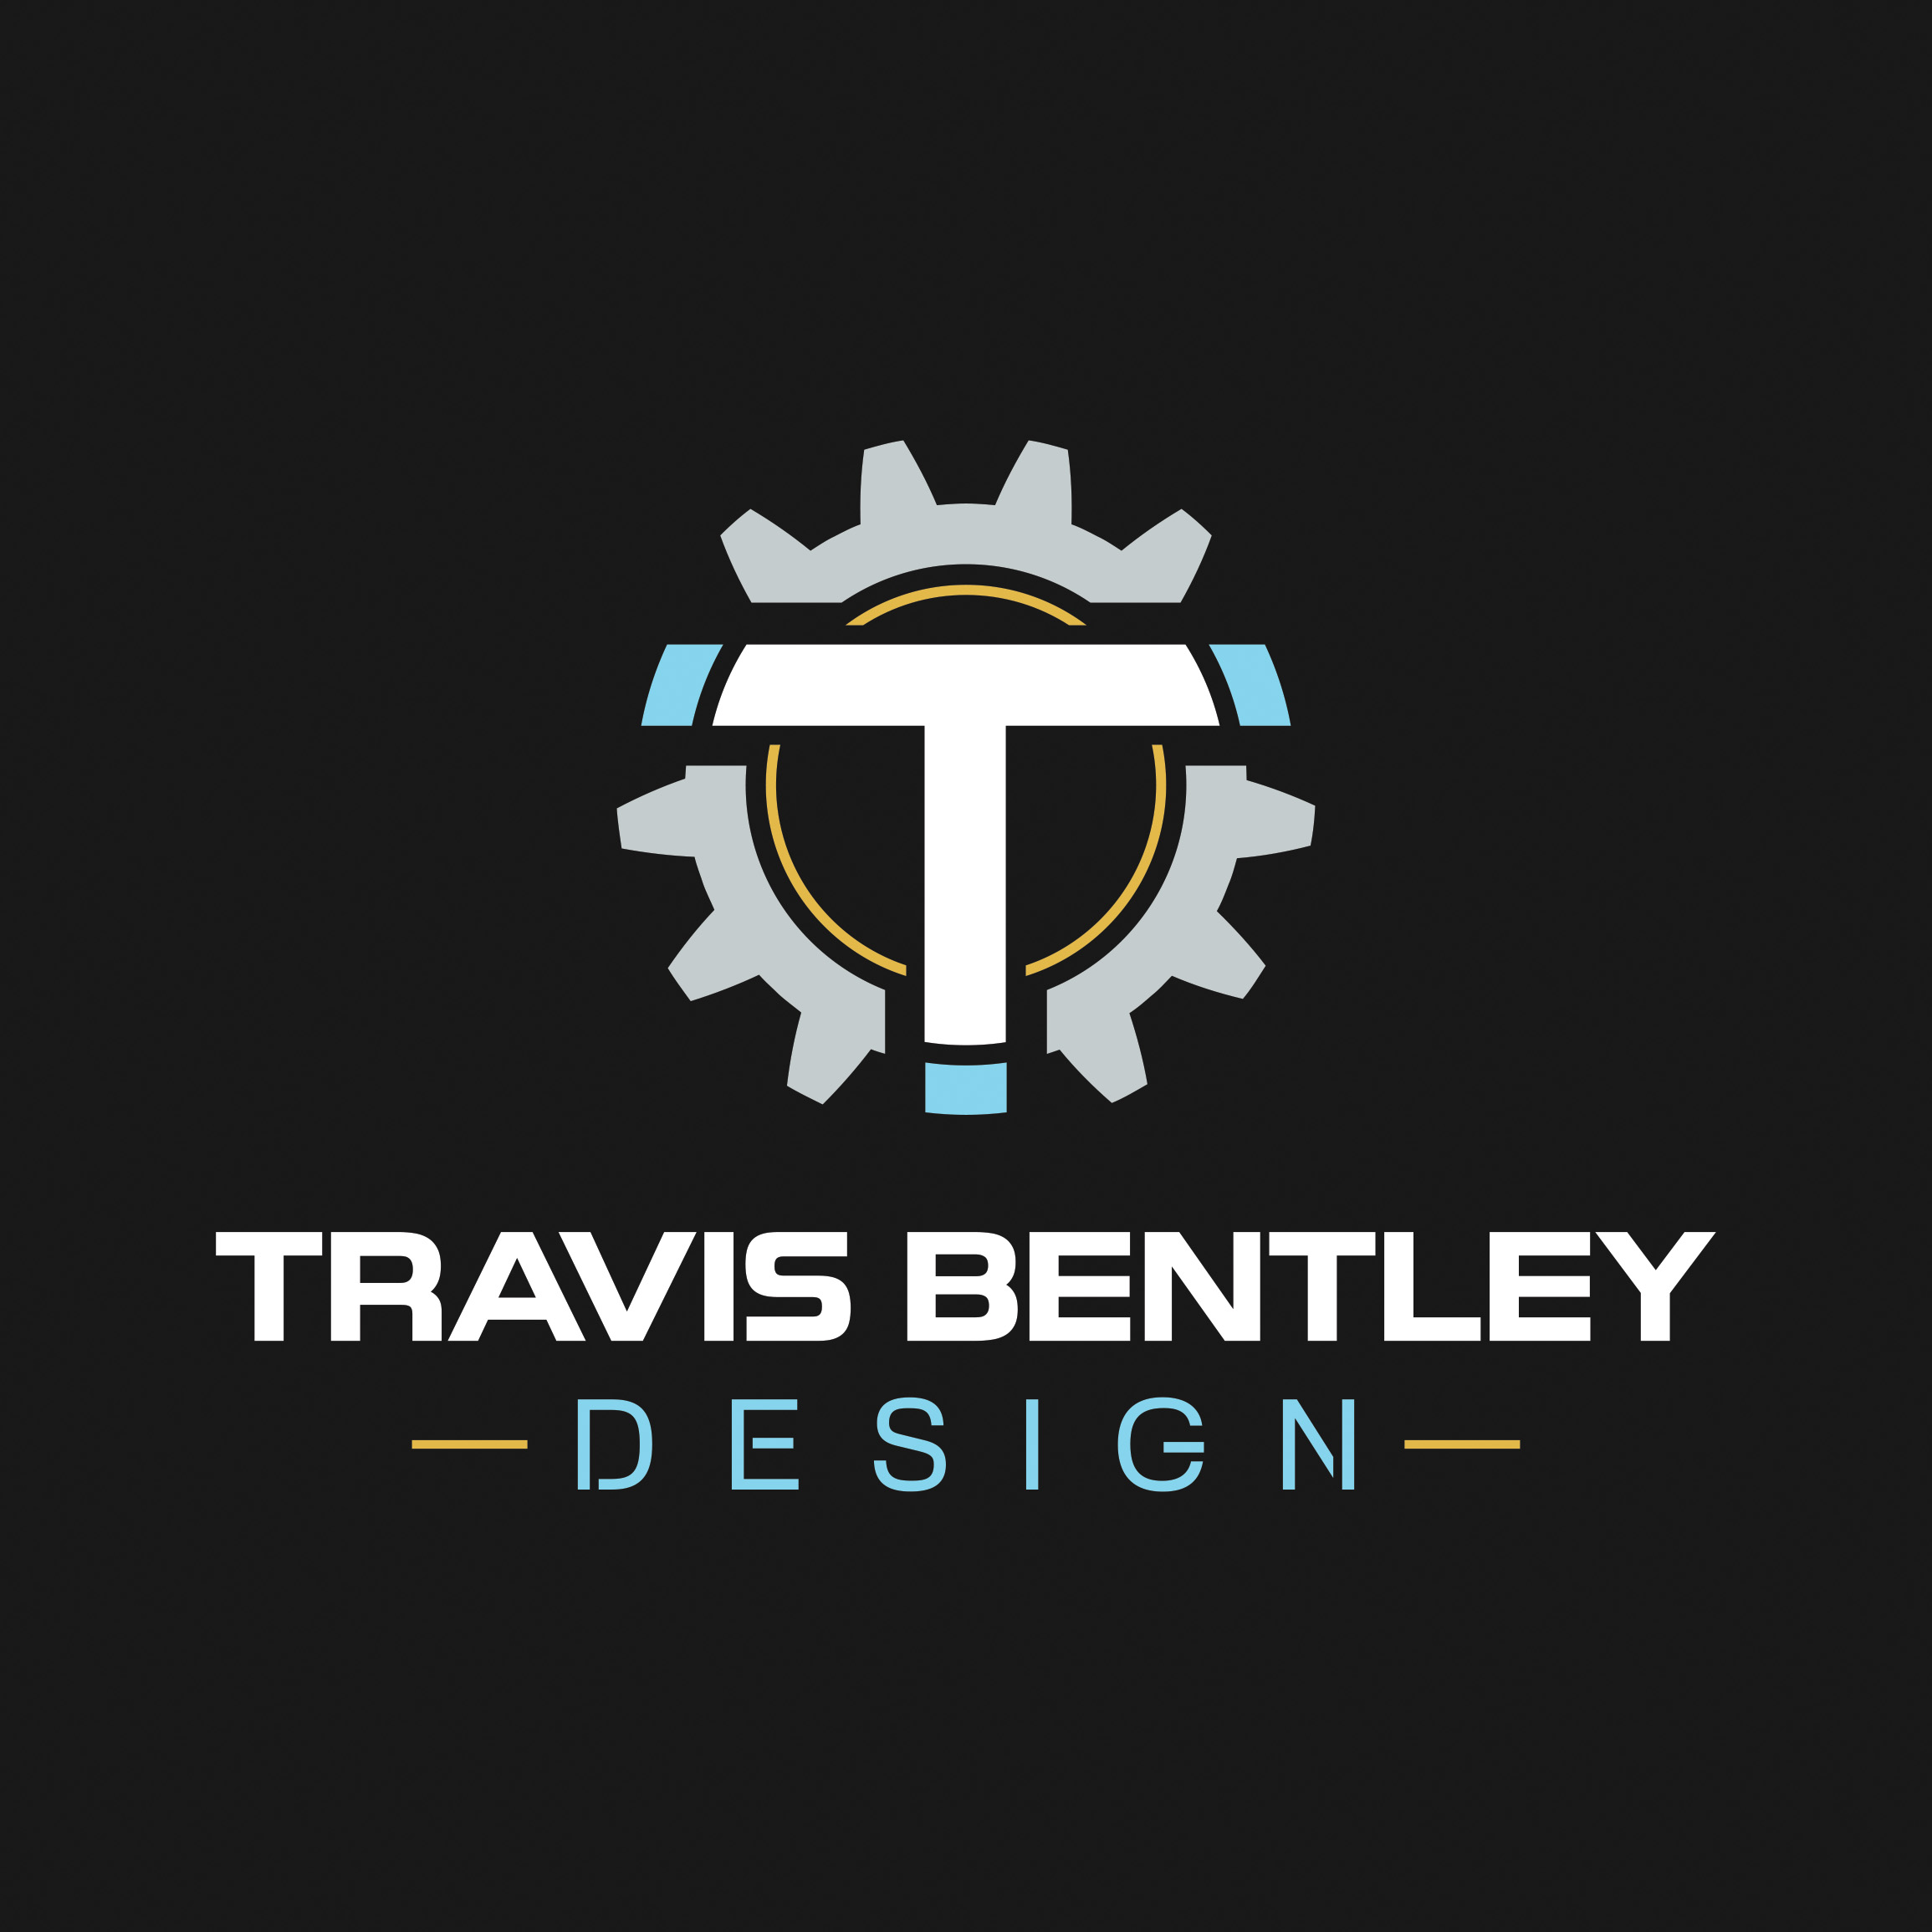 Travis Bentley Design